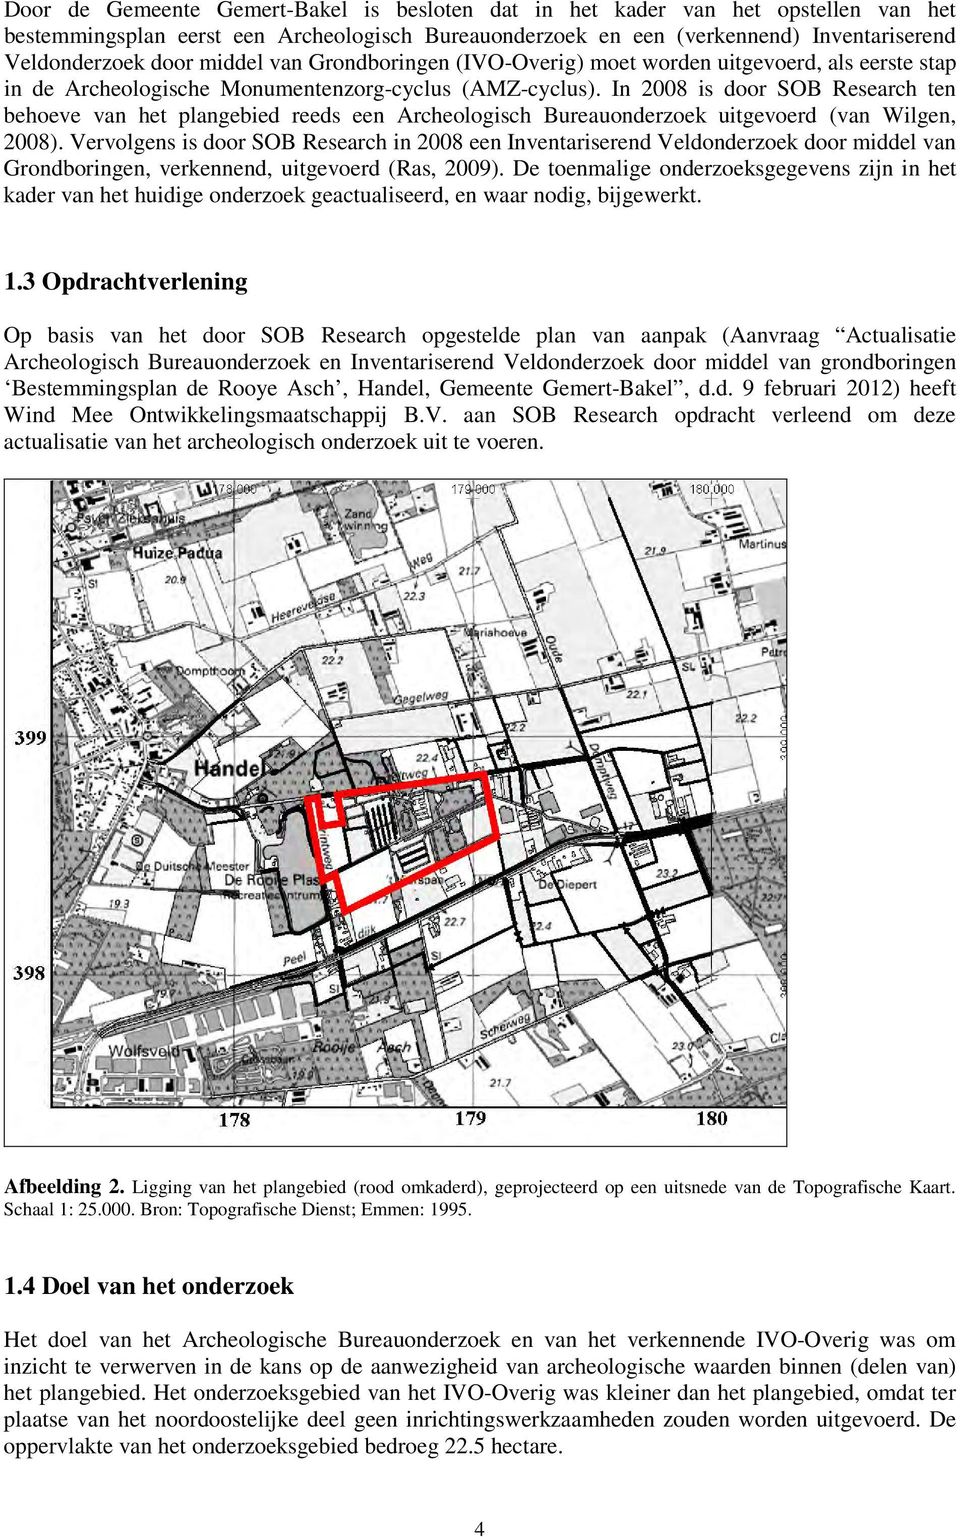 In 2008 is door SOB Research ten behoeve van het plangebied reeds een Archeologisch Bureauonderzoek uitgevoerd (van Wilgen, 2008).